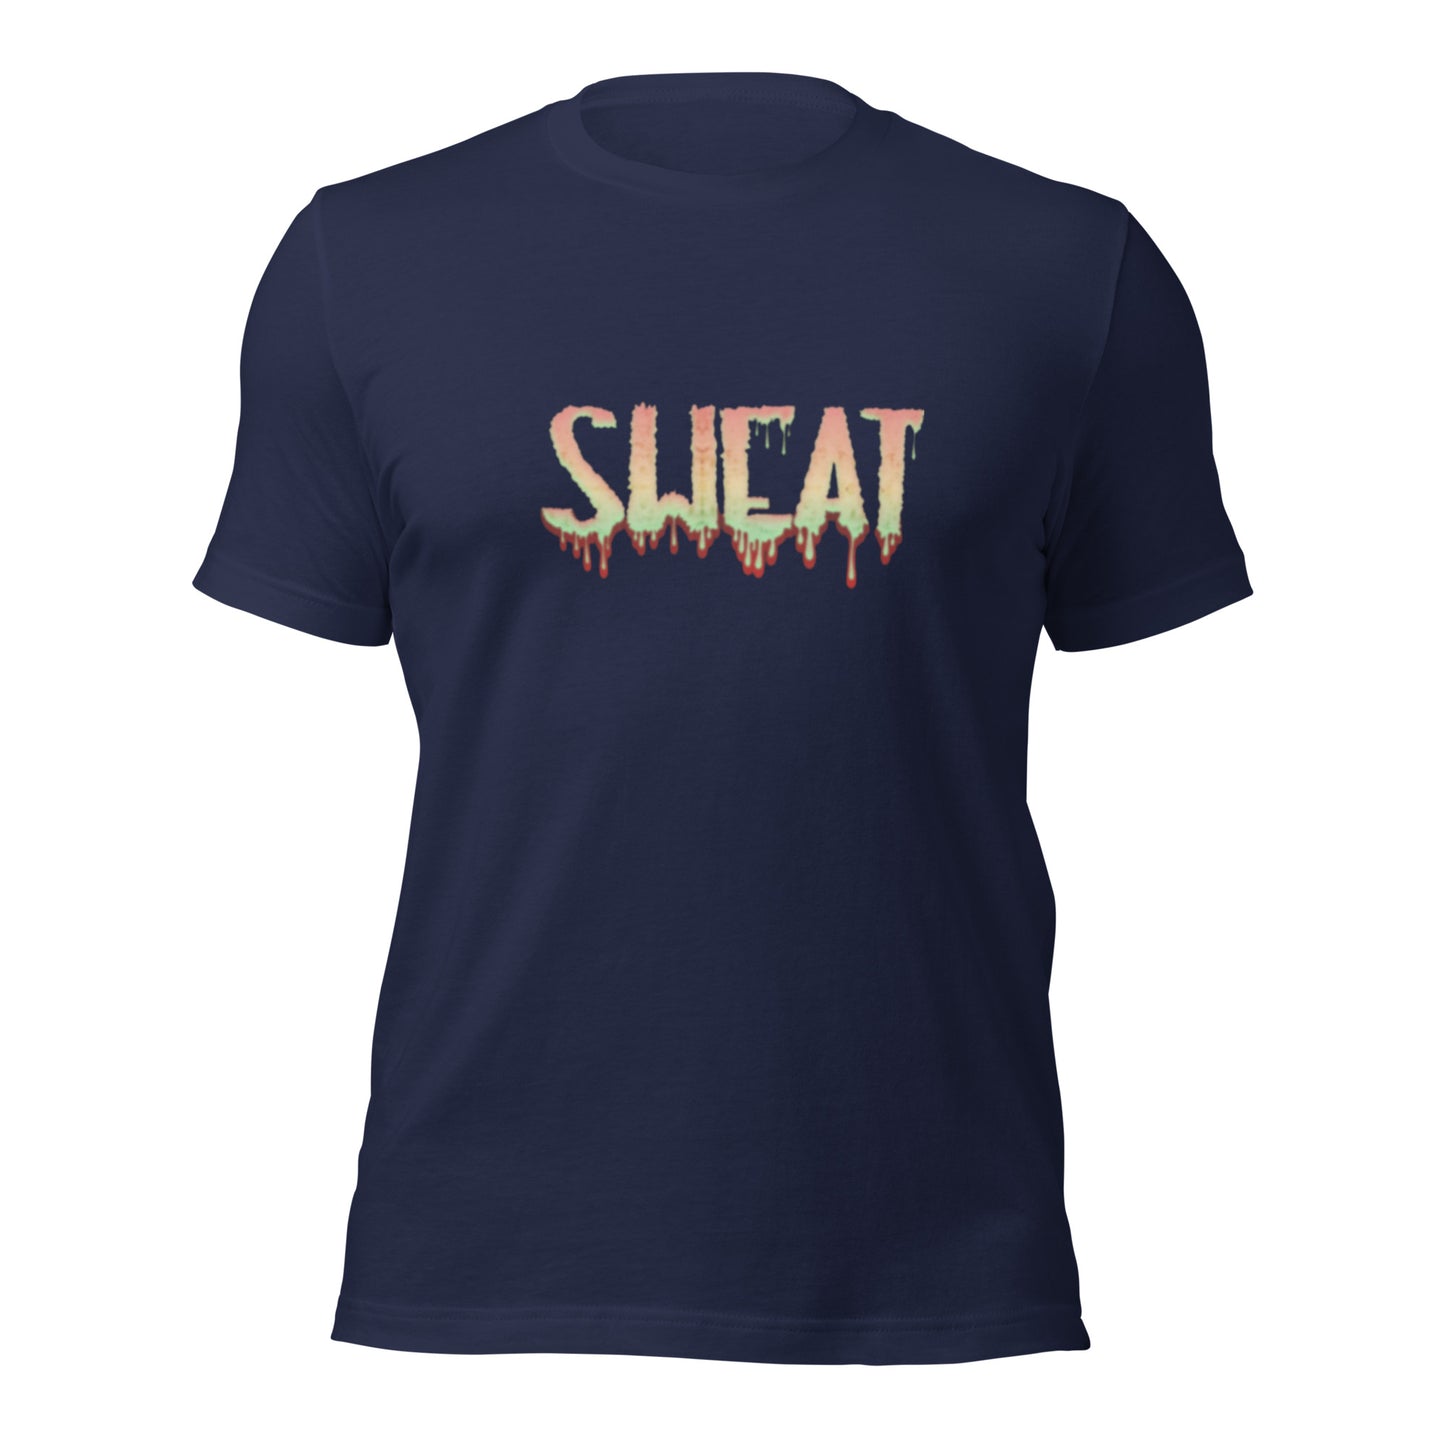 SWEAT-T-Shirt